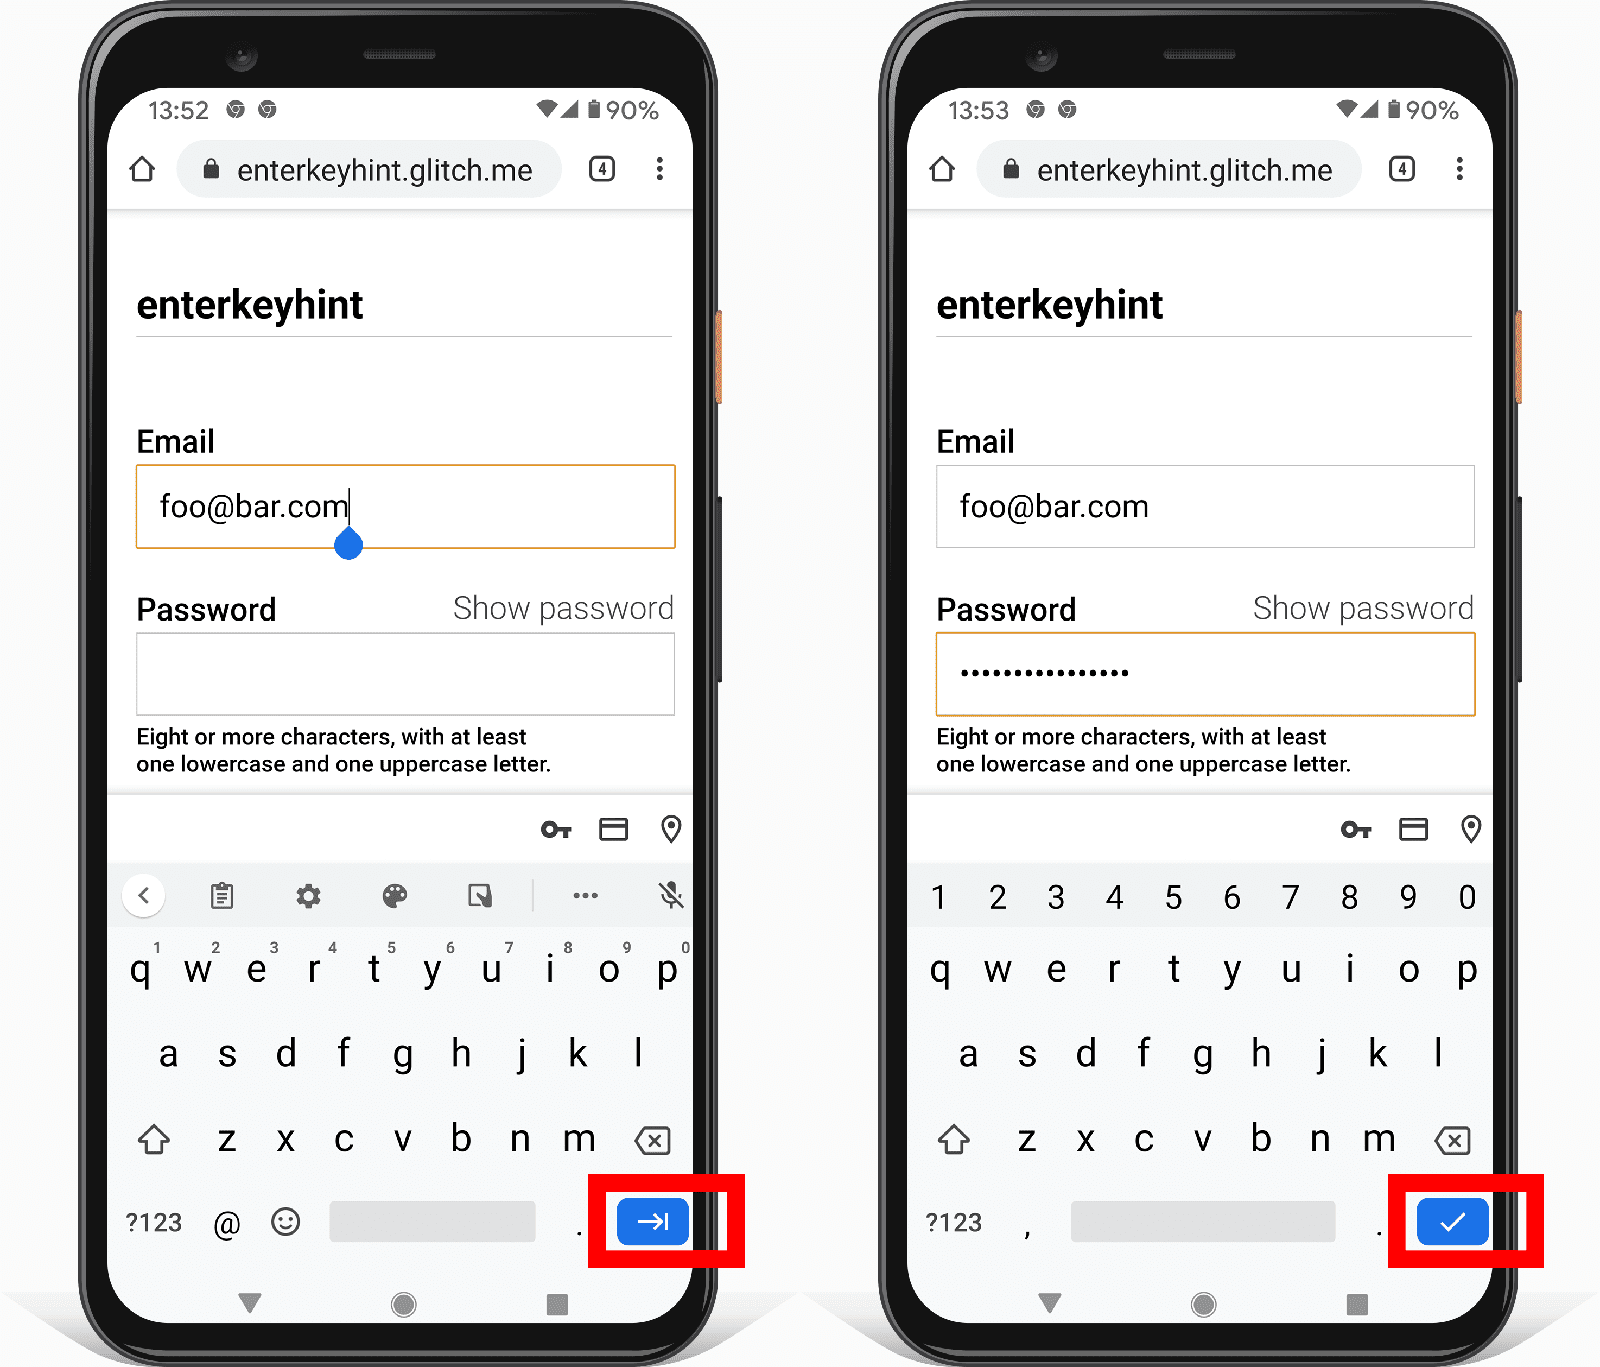 שני צילומי מסך של טופס כתובת ב-Android שמראים איך מאפיין הקלט Enterkeyhint משנה את הסמל של לחצן Enter.